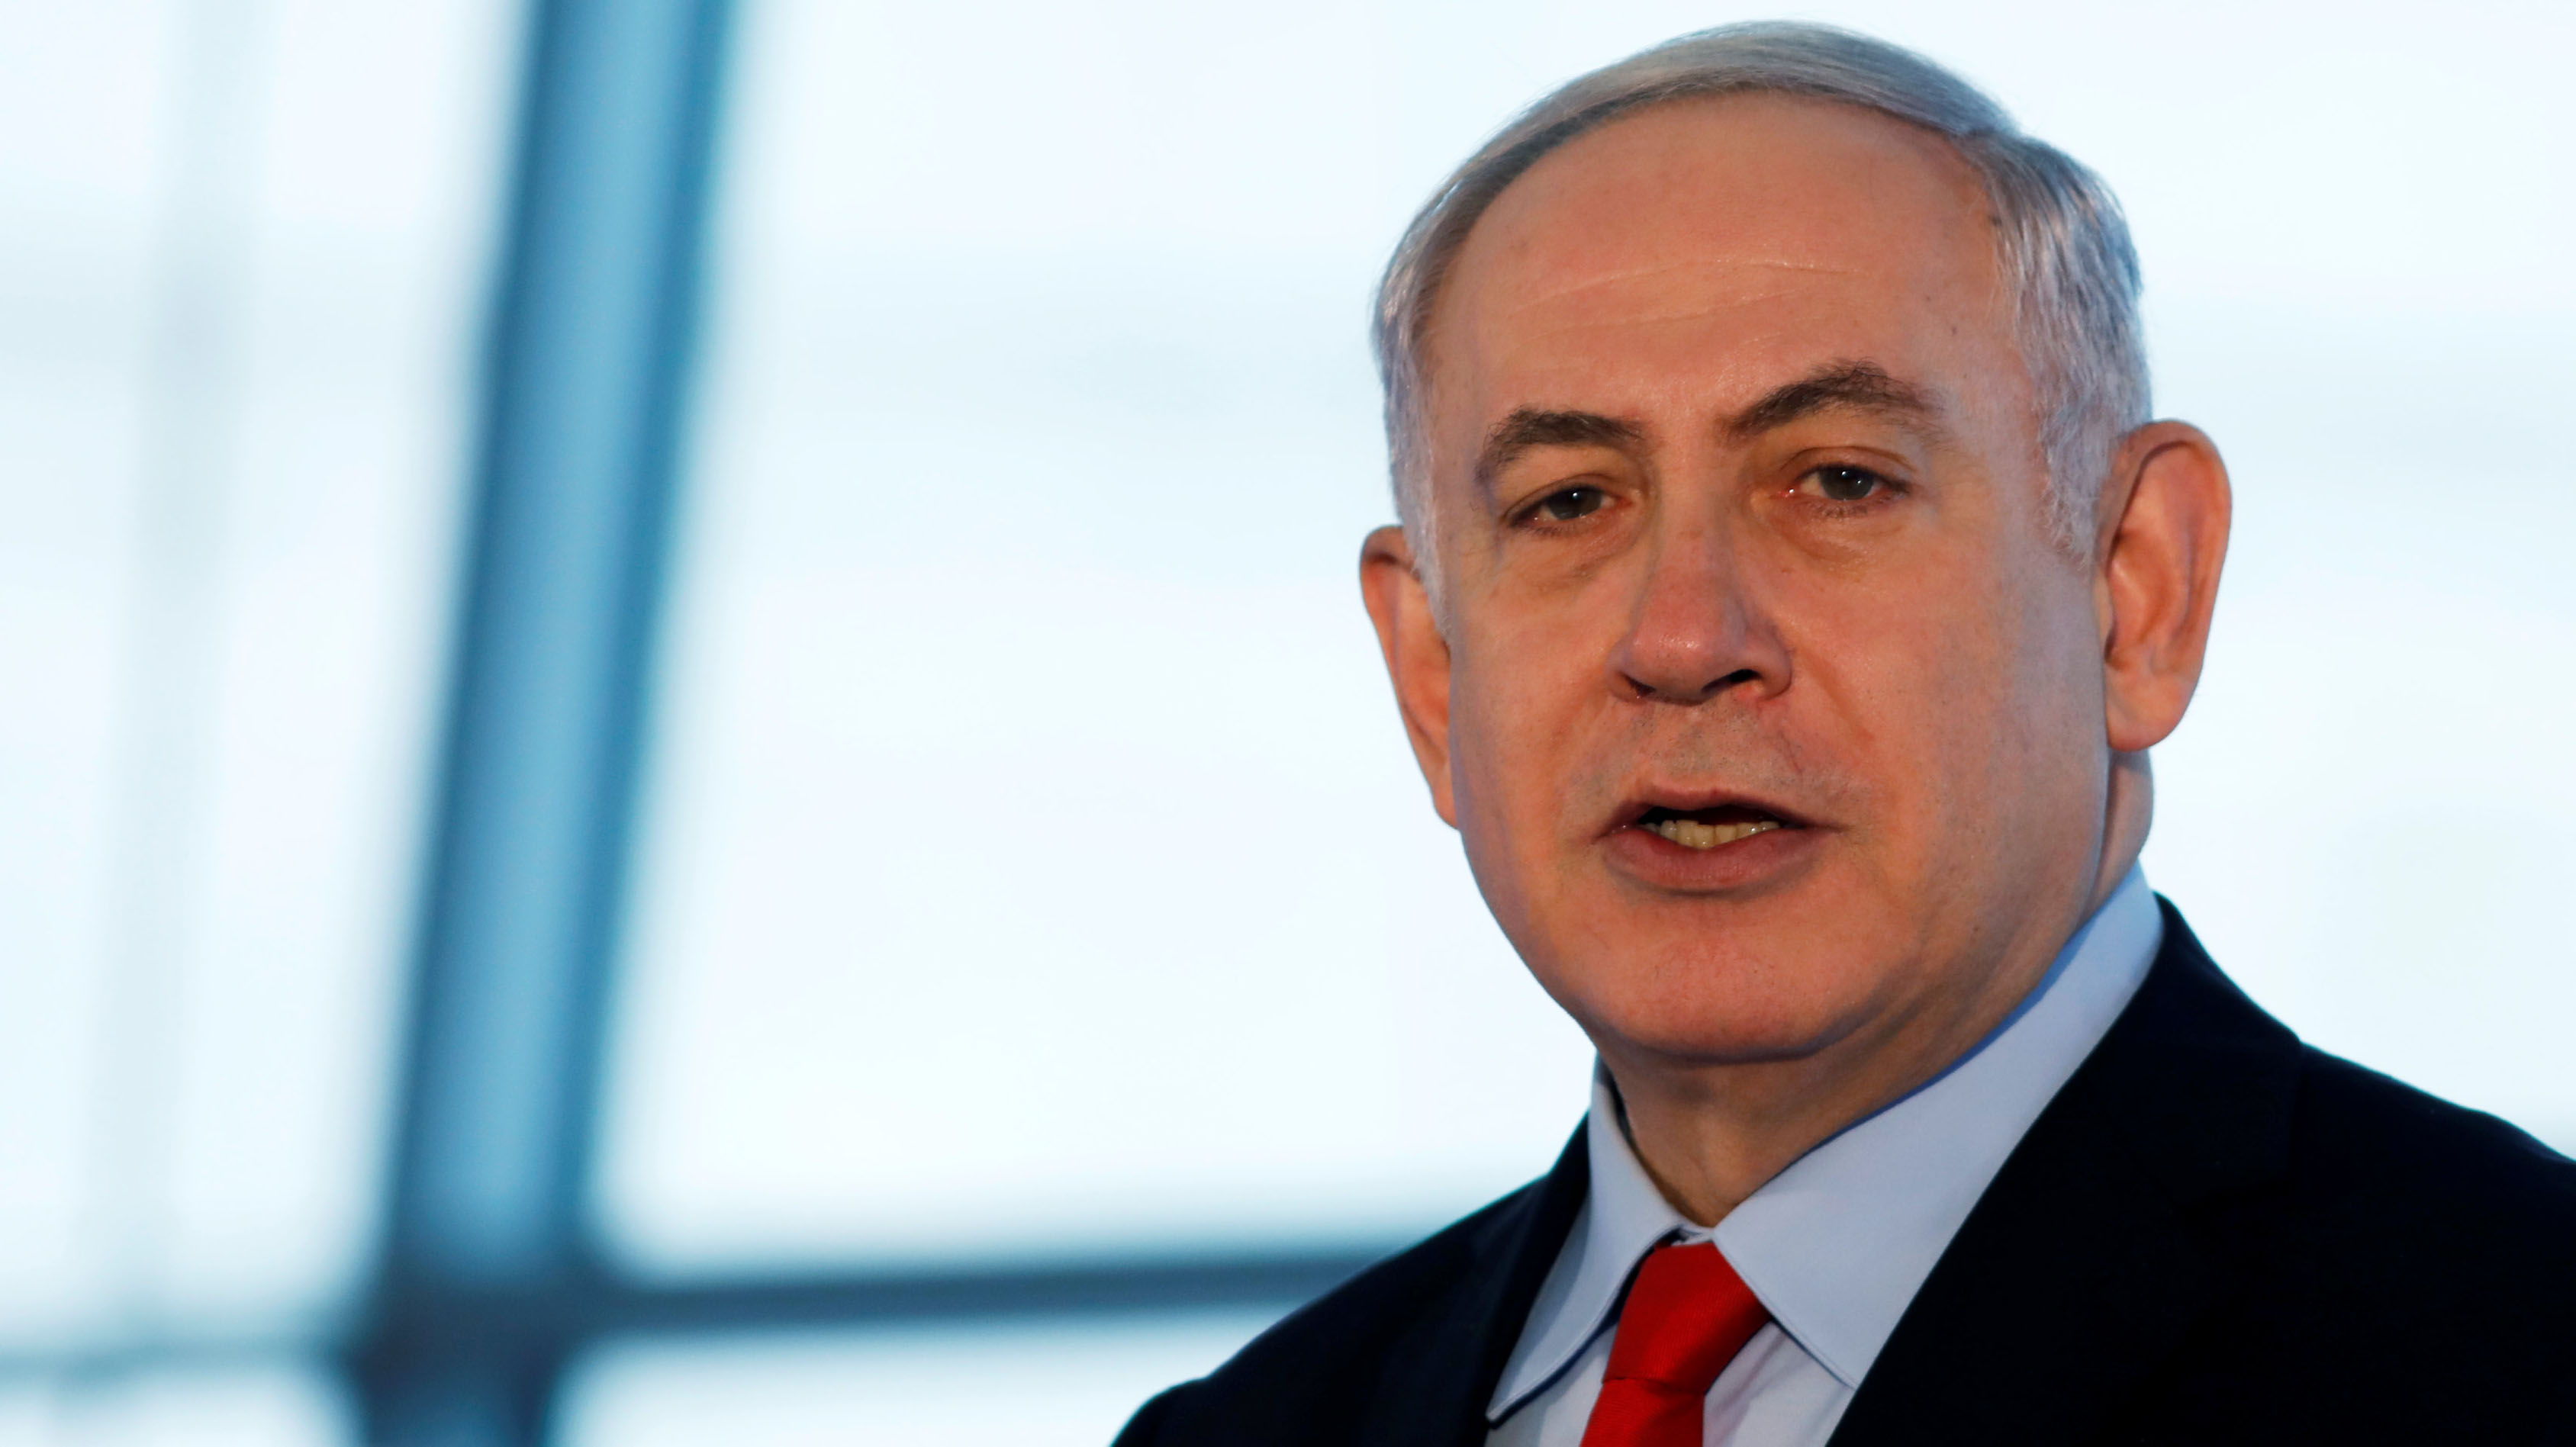 Policía israelí interroga a Netanyahu por casos de corrupción